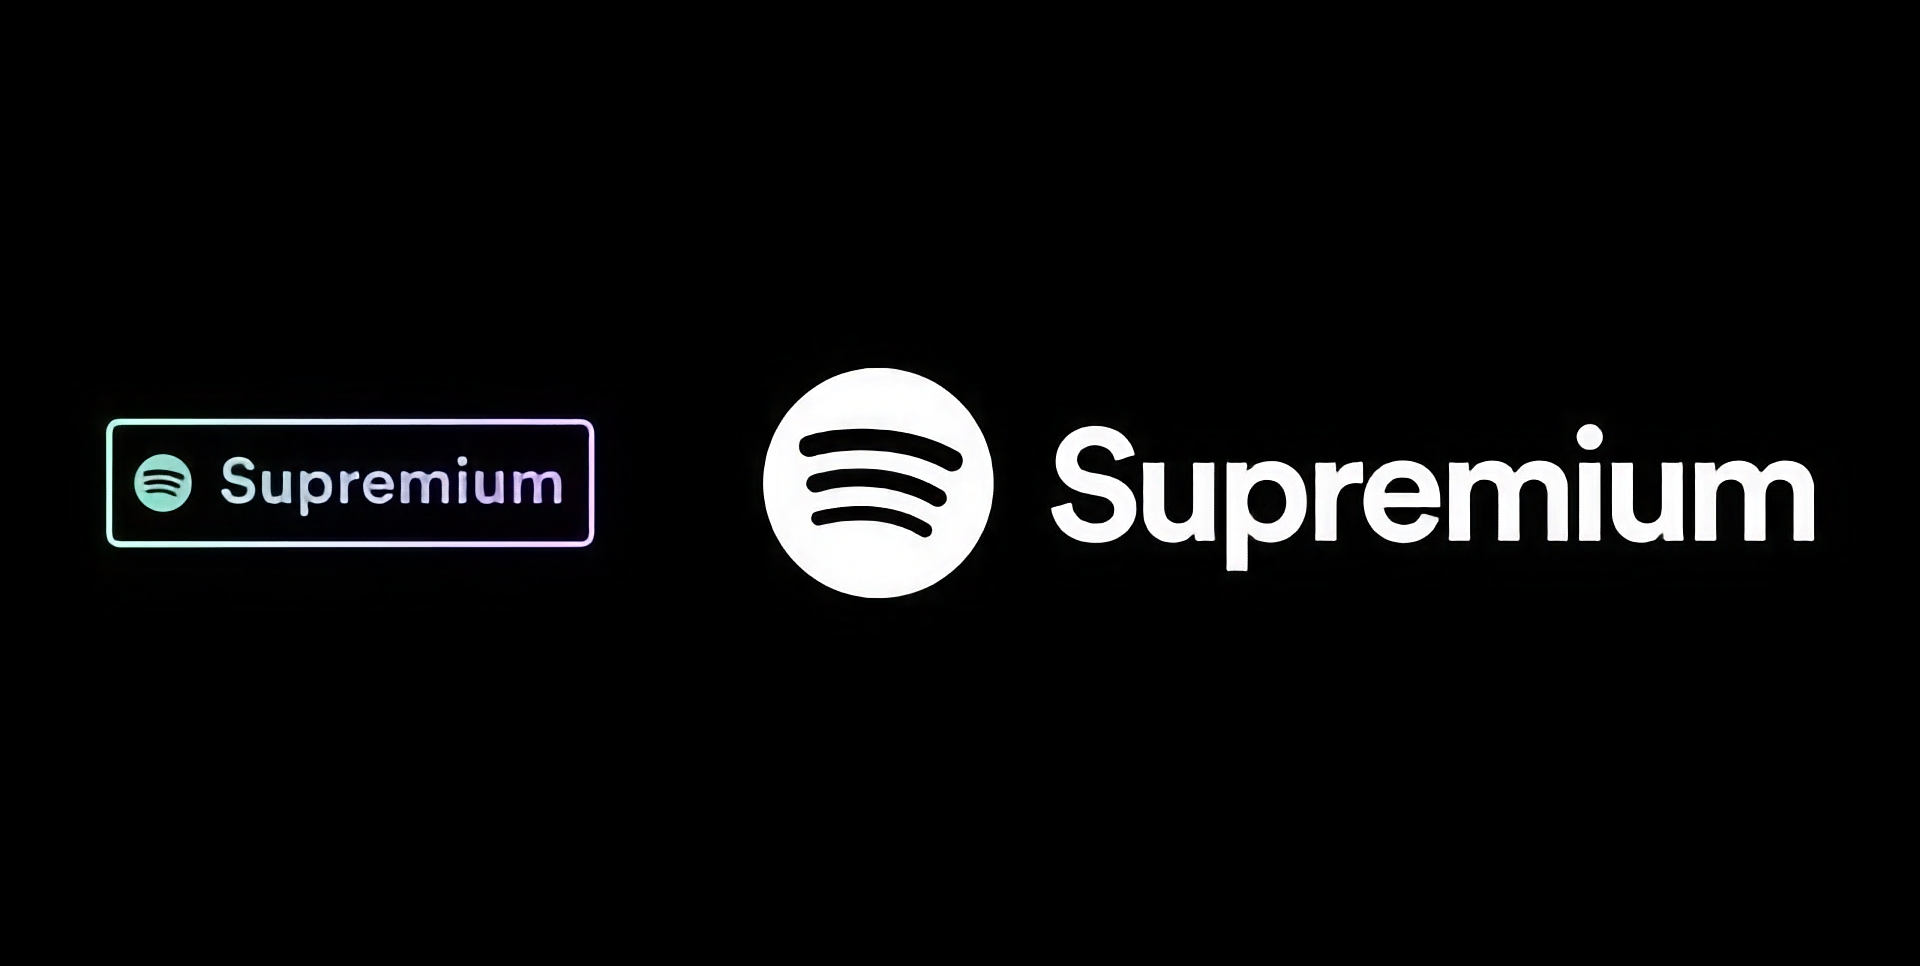 Spotify se prepara para lanzar un plan Supremium con soporte de audio Lossless y un precio de 19 dólares al mes